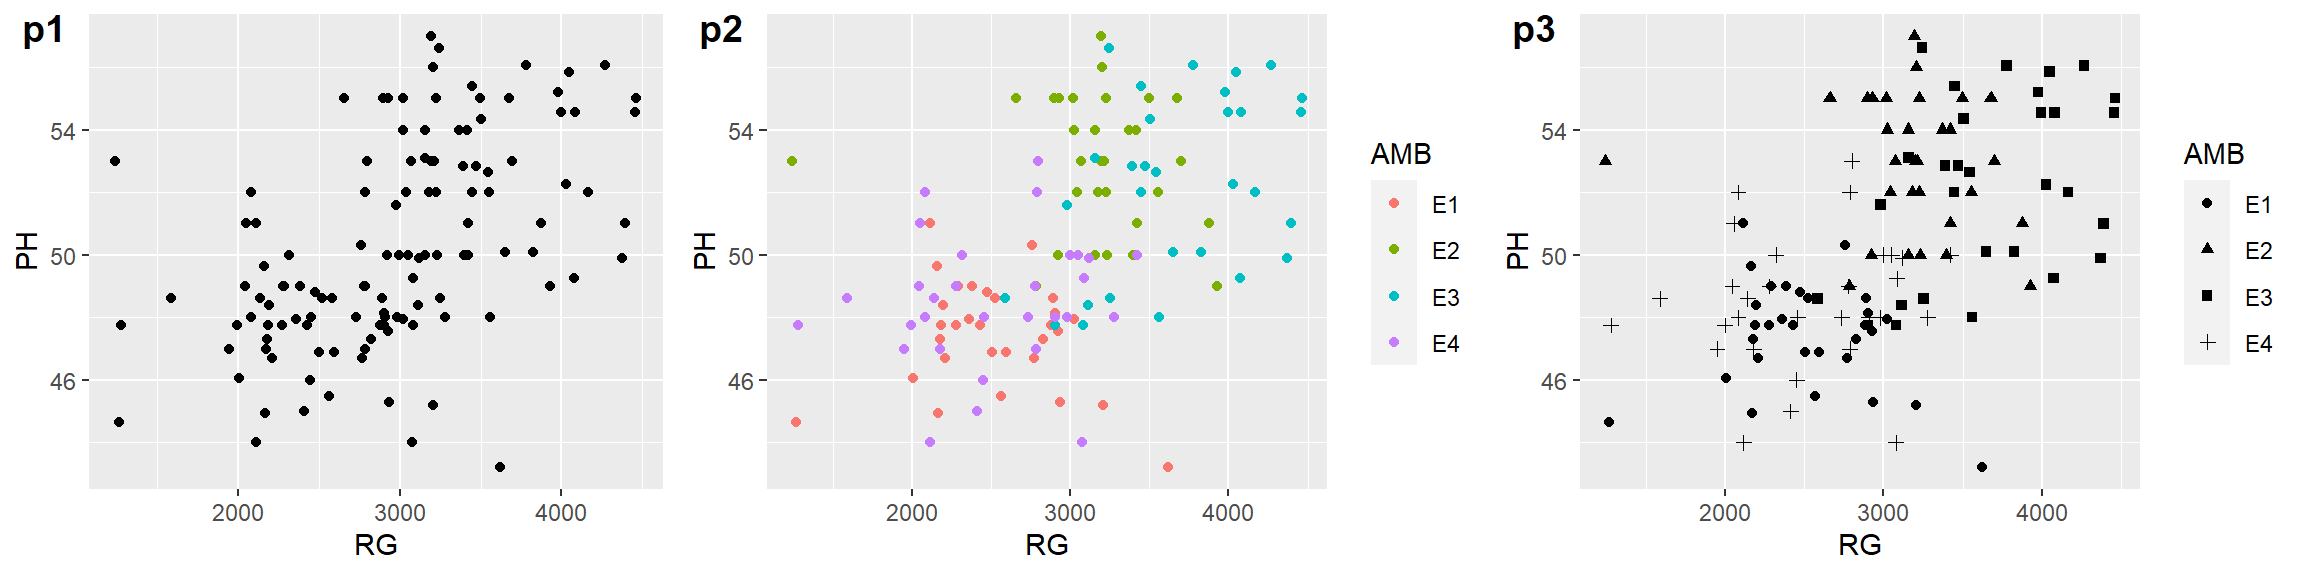 Gráfico de dispersão padrão (p1) e com pontos mapeados por cores (p2) e marcadores (p3) para cada nível do fator 'AMB'.